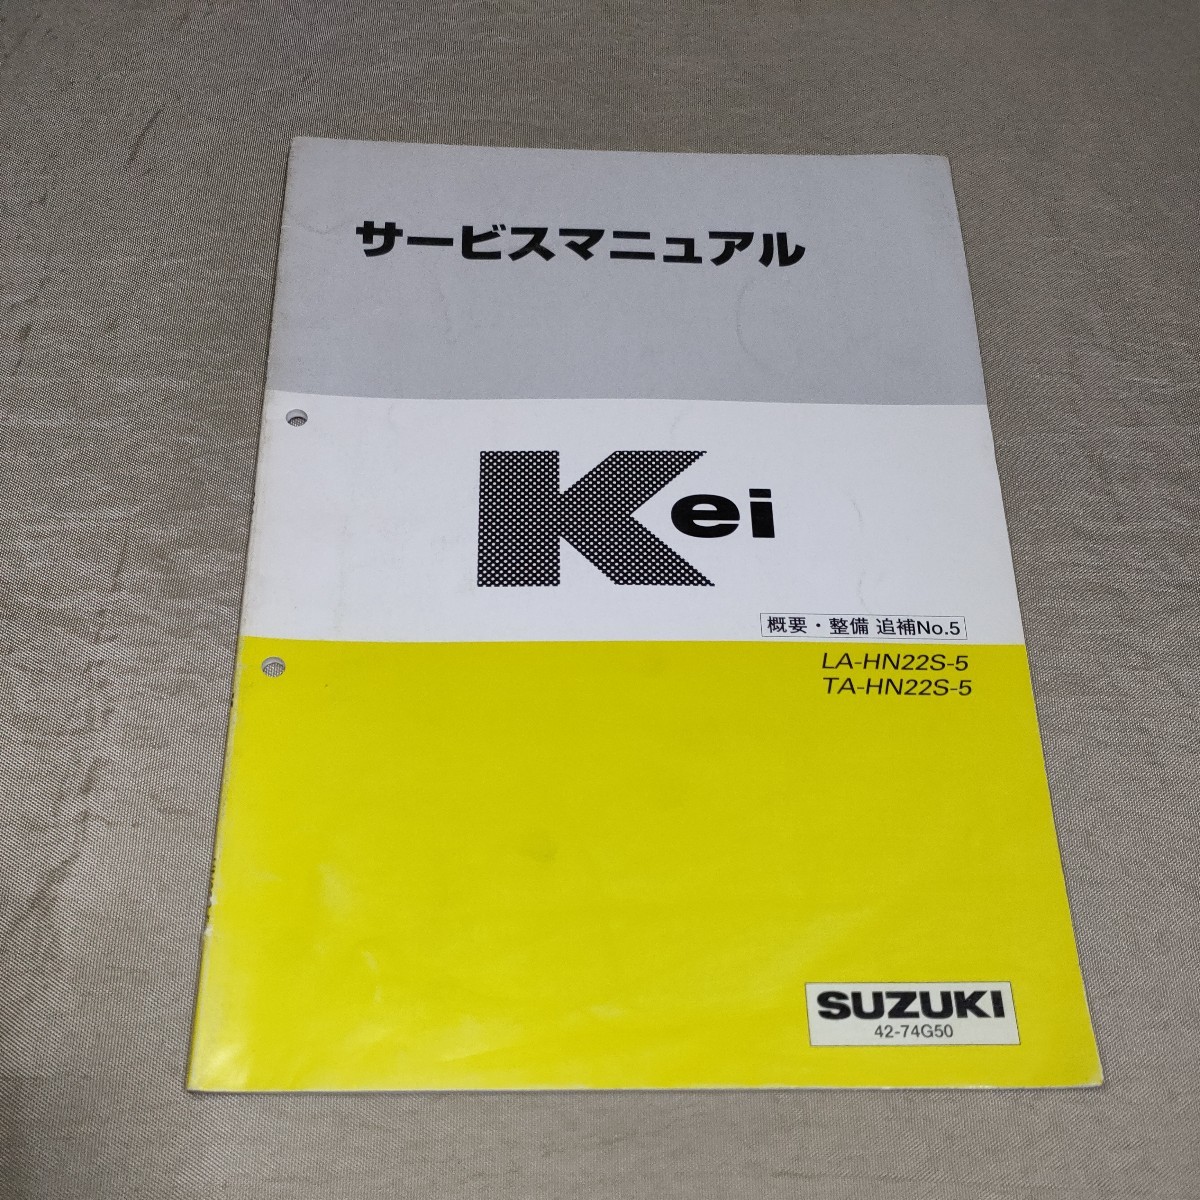 サービスマニュアル Kei HN22S 概要・整備 追補No.5 2001の画像1